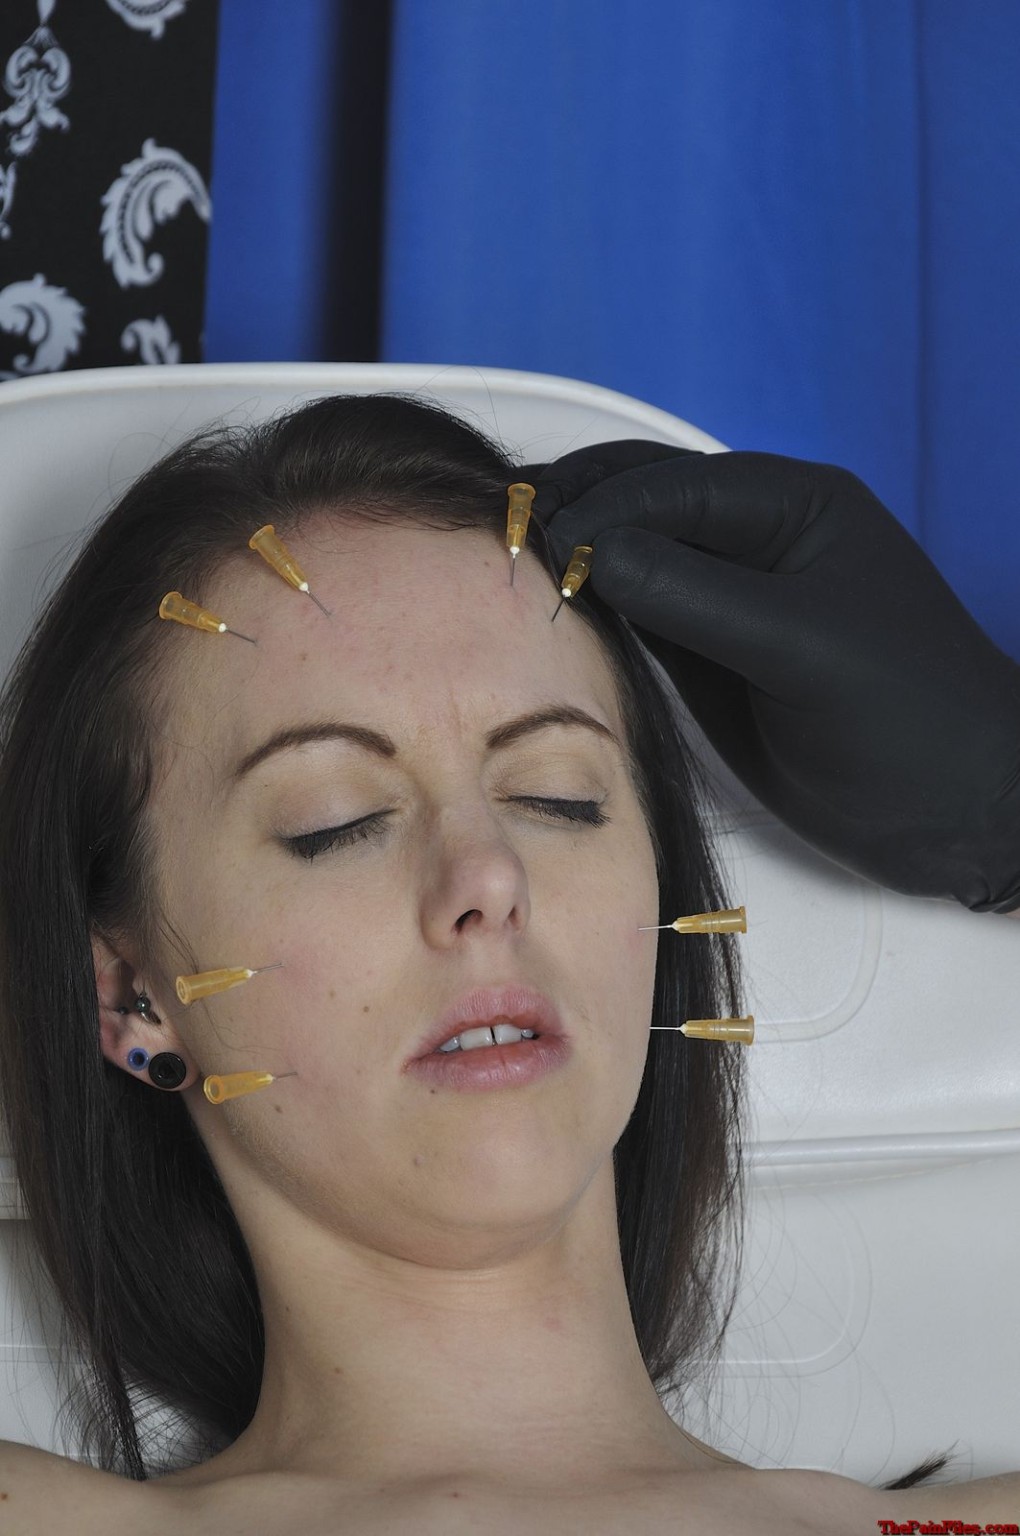 針で拷問された患者たち 過激なBdsmと顔面ピアスで胸を痛めつける
 #72062349